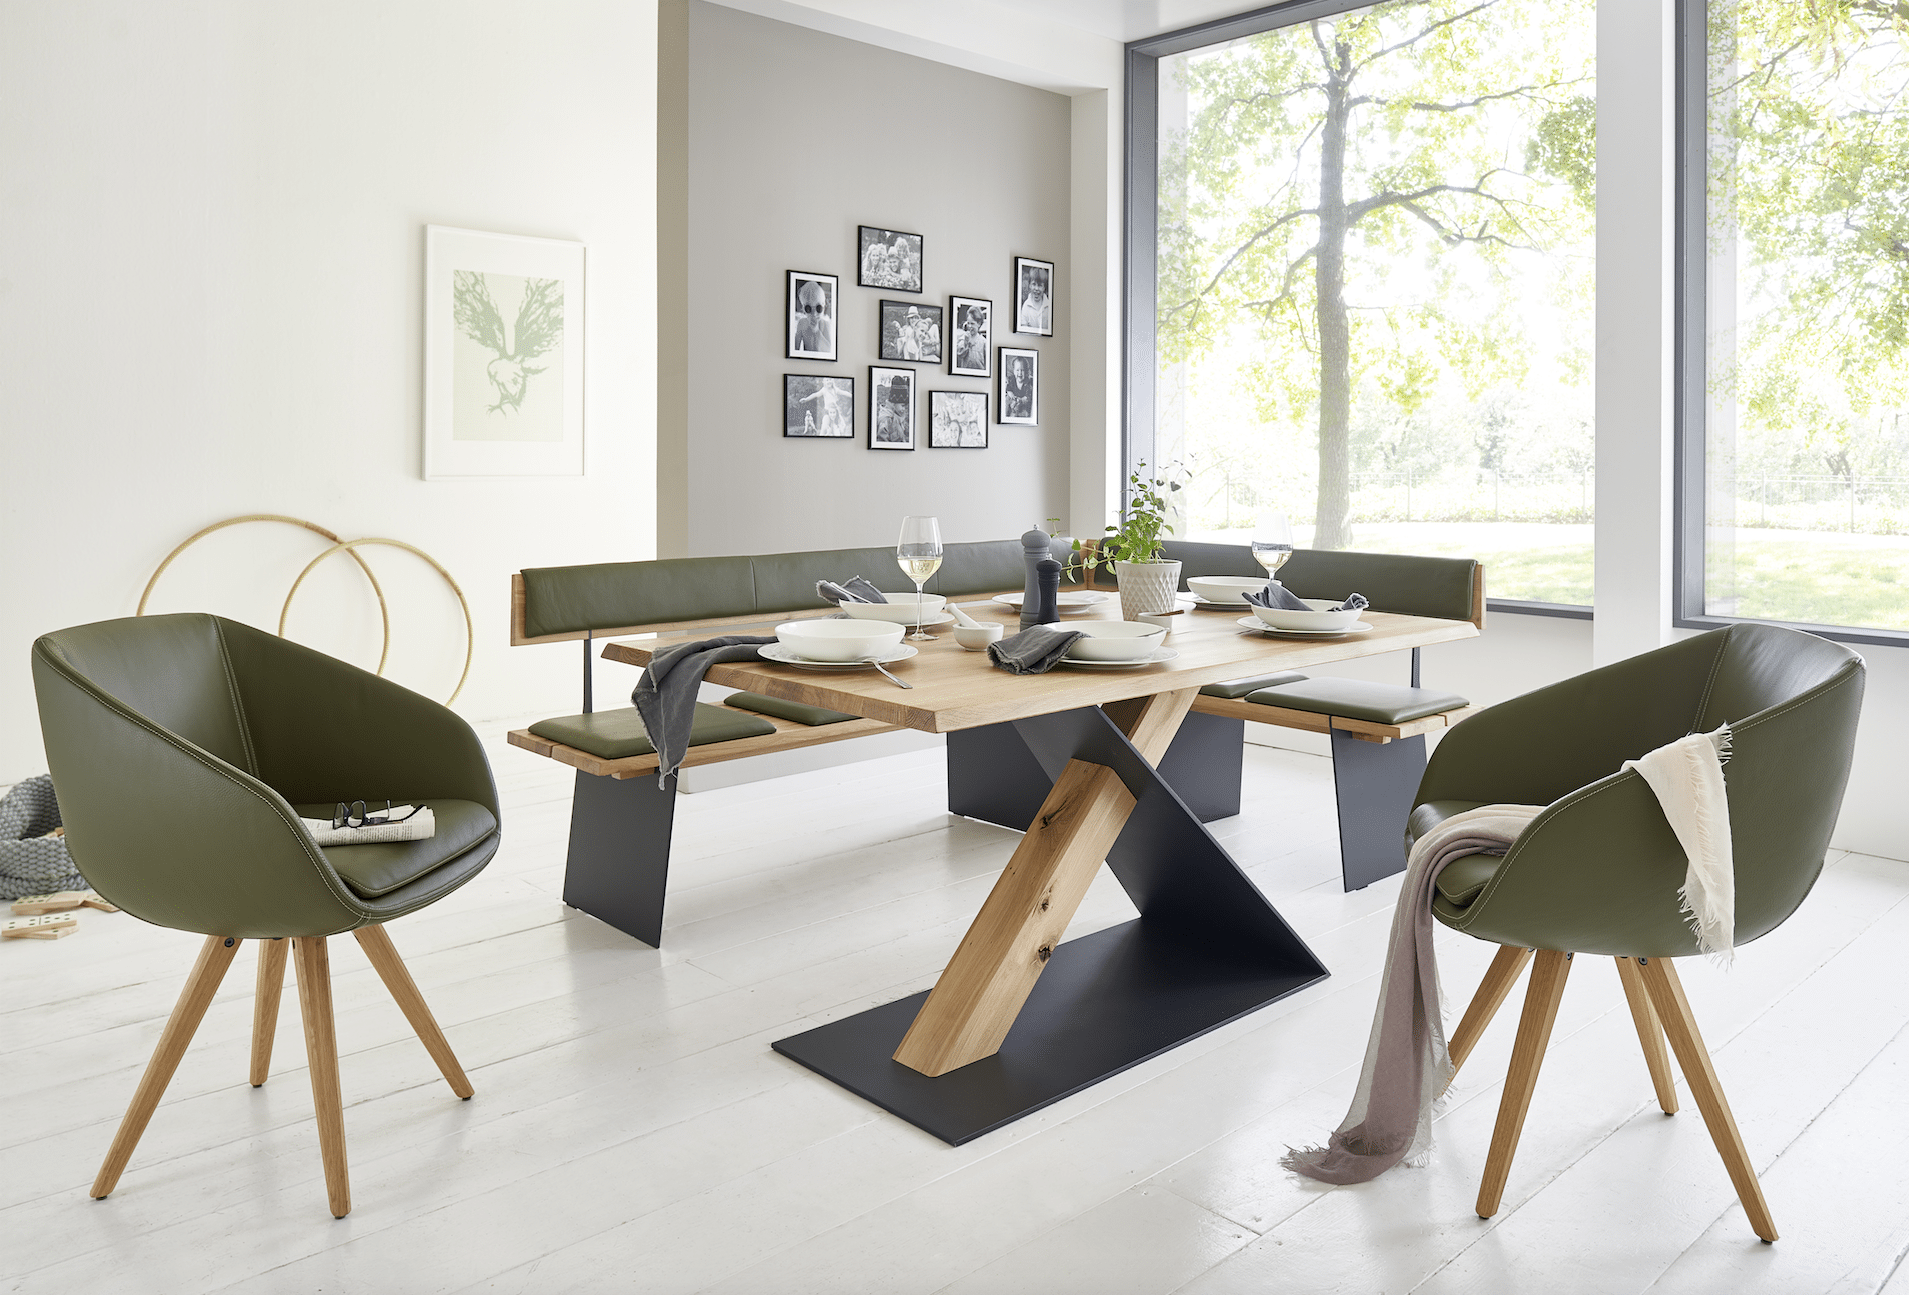 WOHNHAUS Grill & Ronacher zeigt einen edlen Essbereich mit Tisch und Bank aus Holz und Stahl, sowie zwei Stühlen von Wimmer Wohnkollektionen.